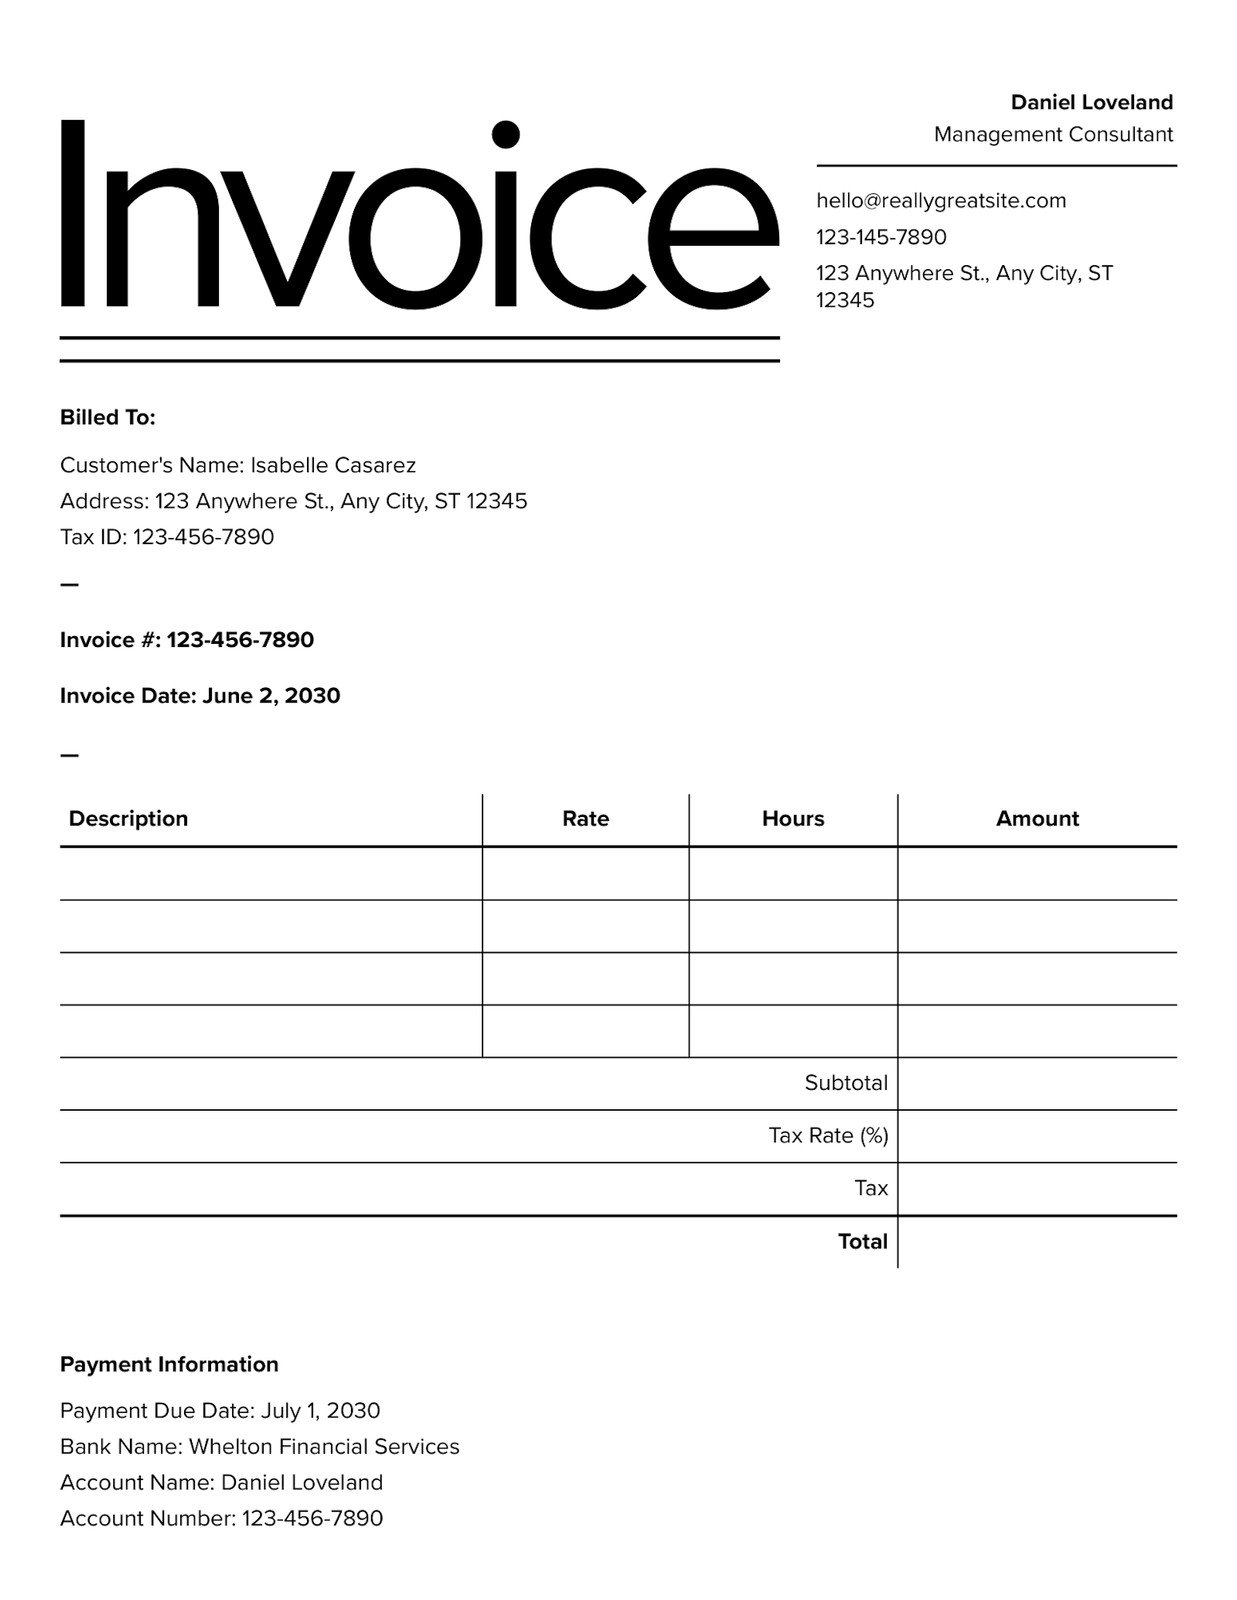 interior design invoice template